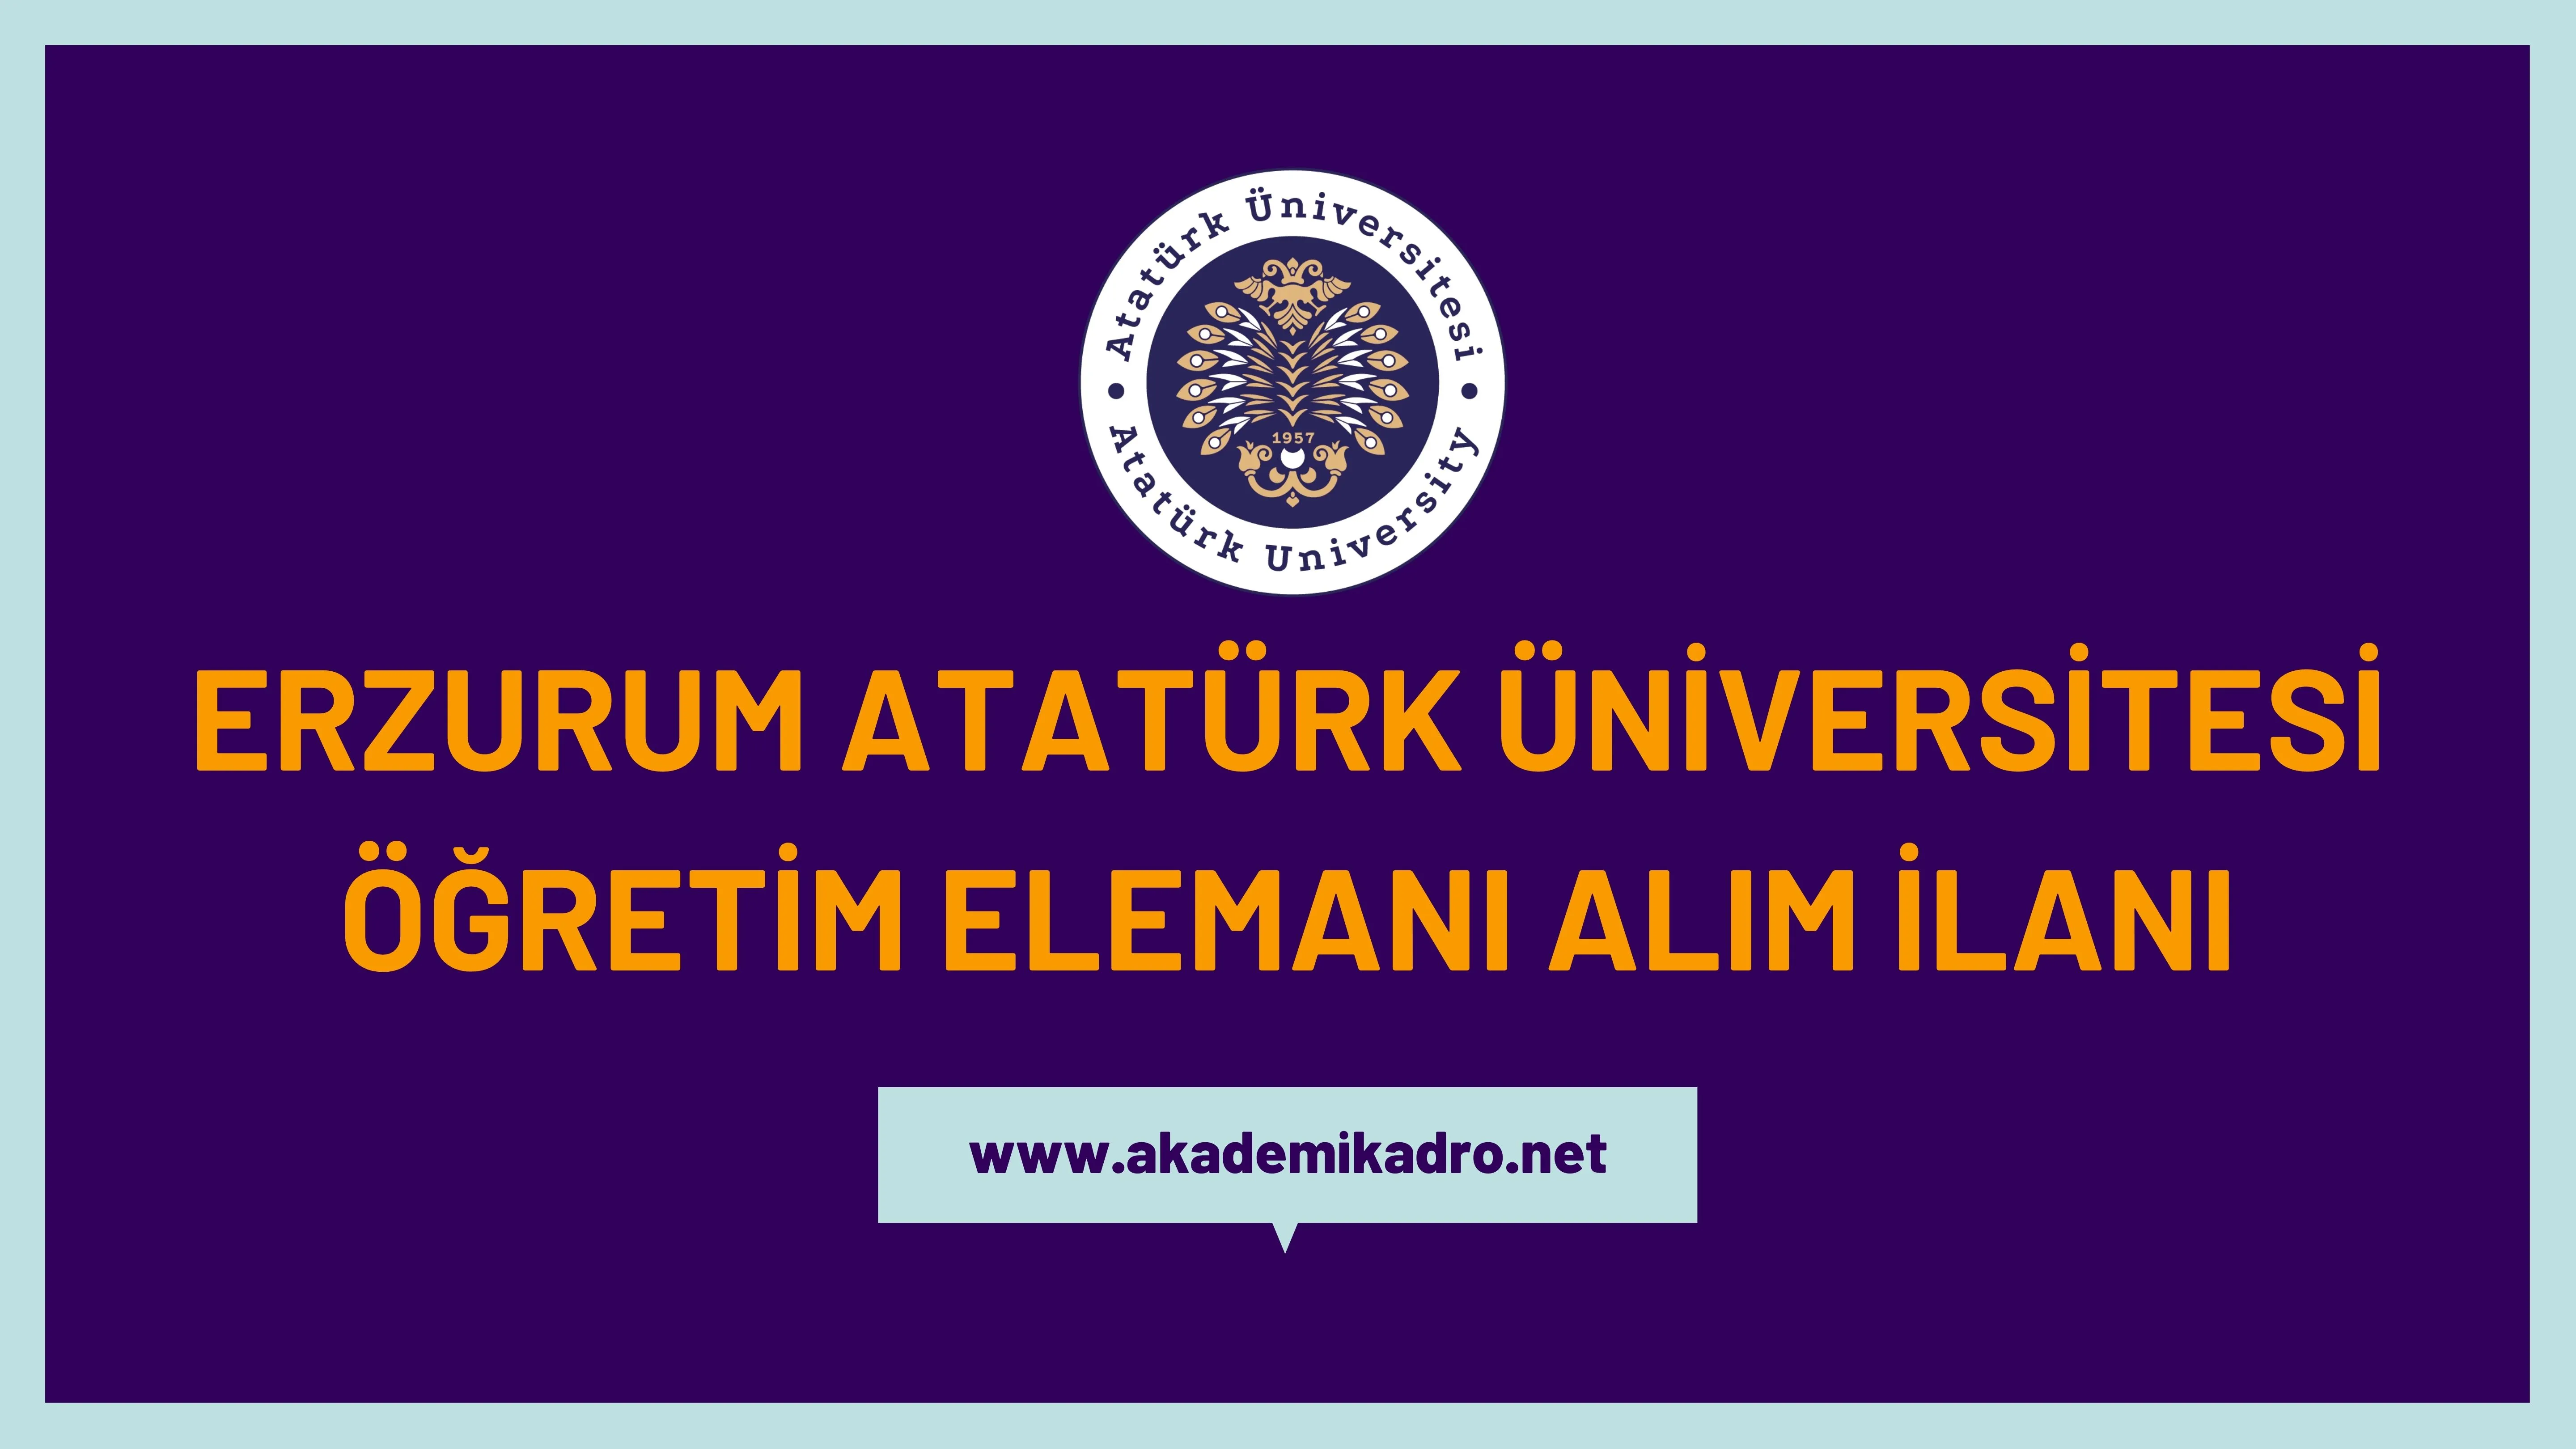 Atatürk Üniversitesi 4 Öğretim görevlisi, 5 Öğretim üyesi ve birçok alandan 35 Araştırma görevlisi olmak üzere 44 Öğretim elemanı alacak.